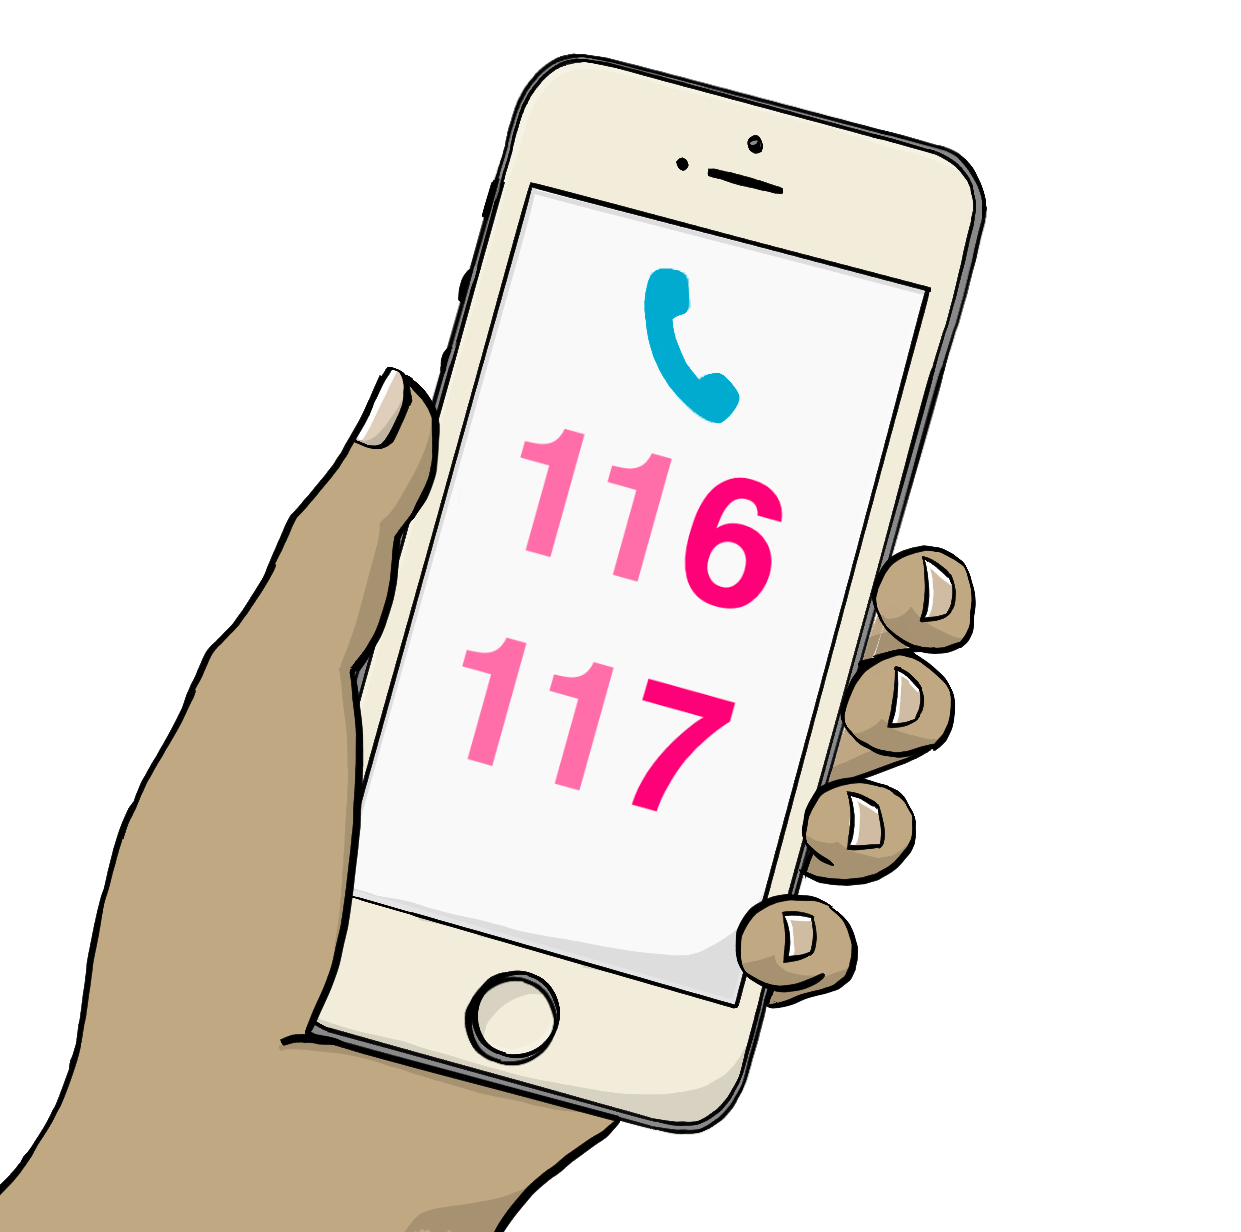 Eine Hand hält ein Handy. Auf dem Handy steht die Nummer 116 117.